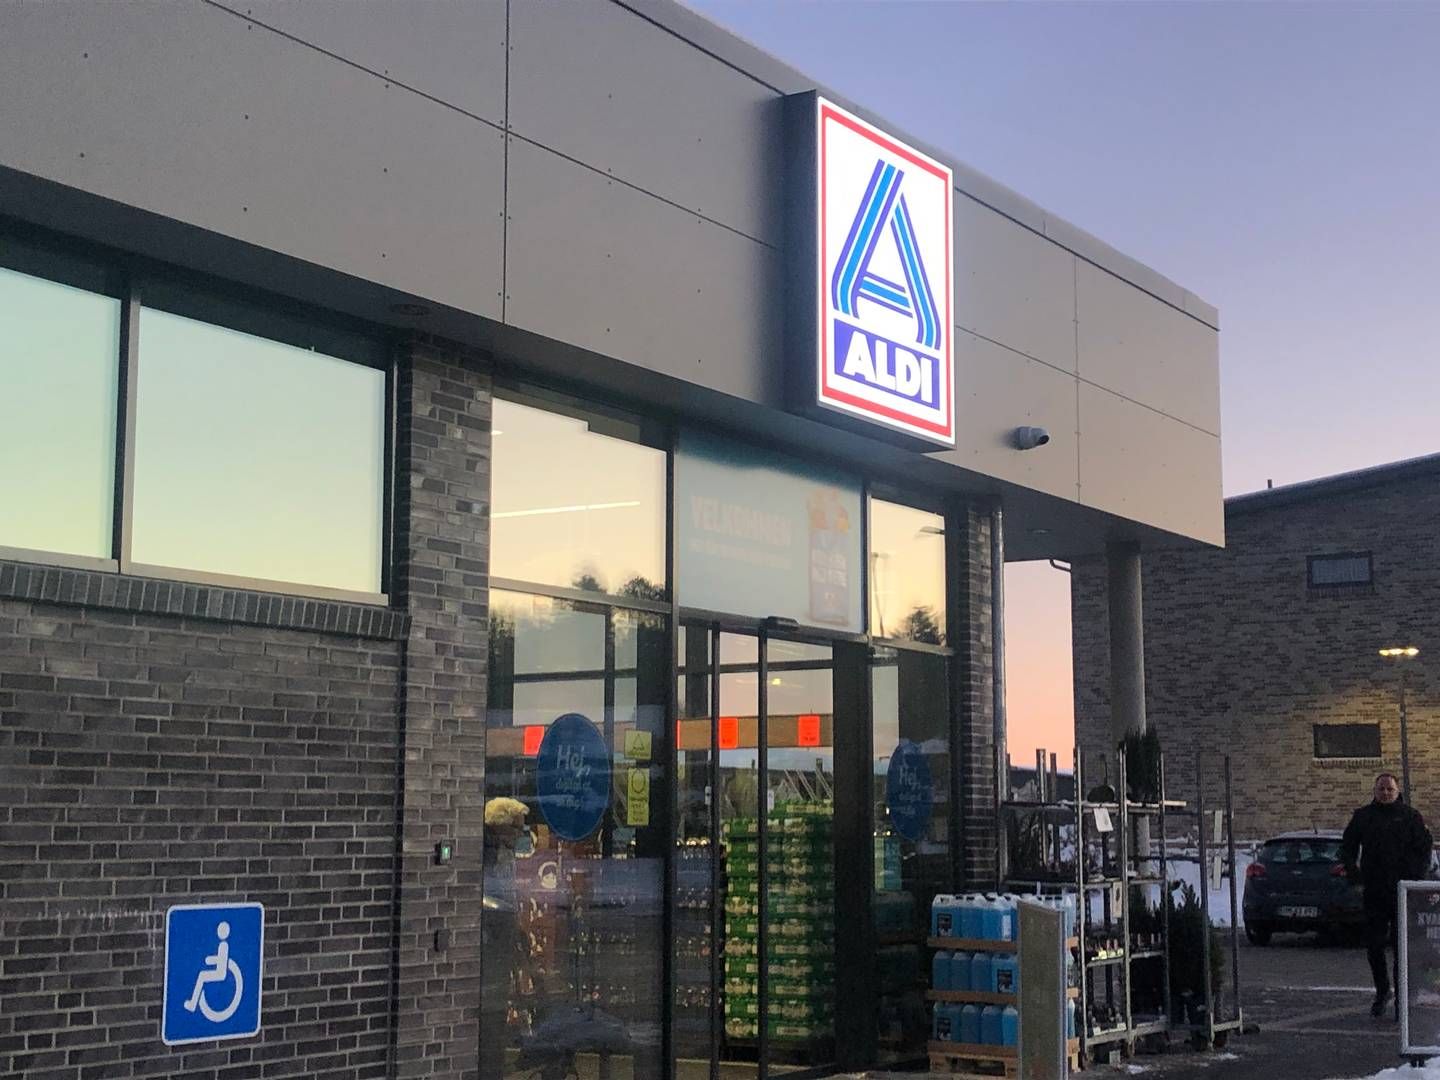 Den endelige overdragelse af Aldi-butikkerne efter discountkædens exit fra Danmark fandt sted i året, hvor blandt andet Rema 1000 fik konkurrencemyndighedernes godkendelse af opkøbet. | Foto: Hella Andersen